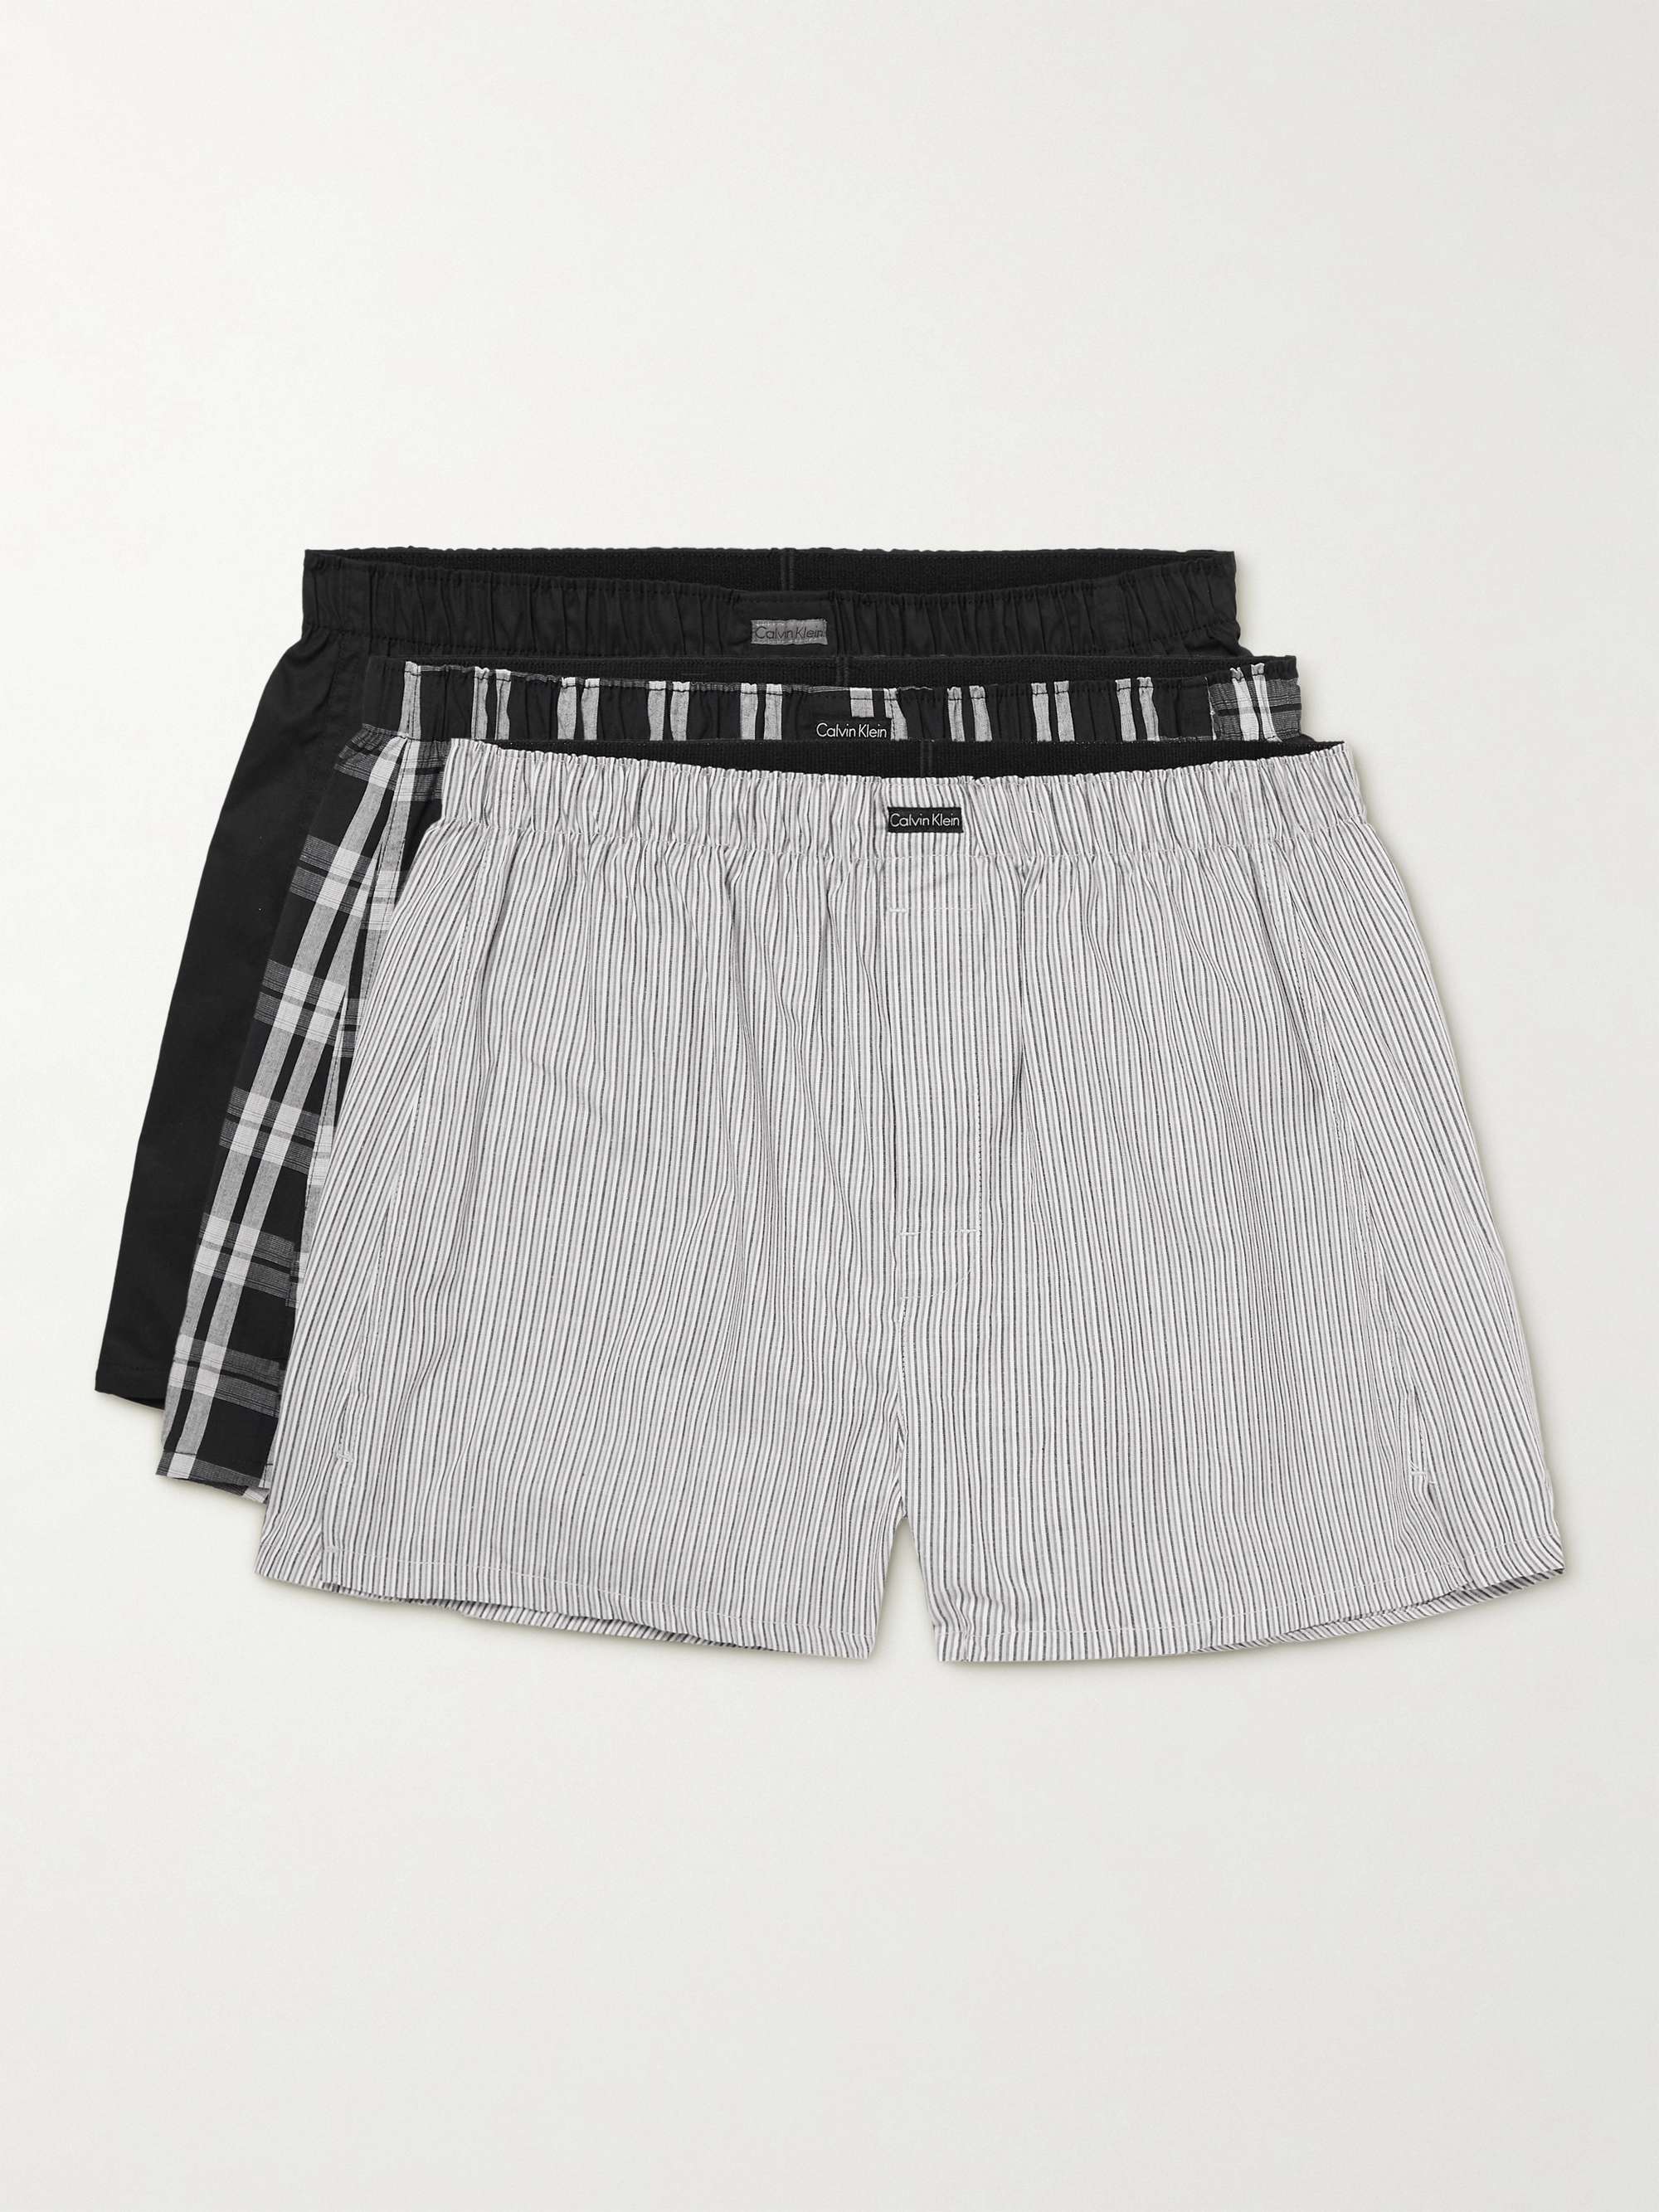 CALVIN KLEIN UNDERWEAR Three-Pack Cotton-Blend Boxer Shorts